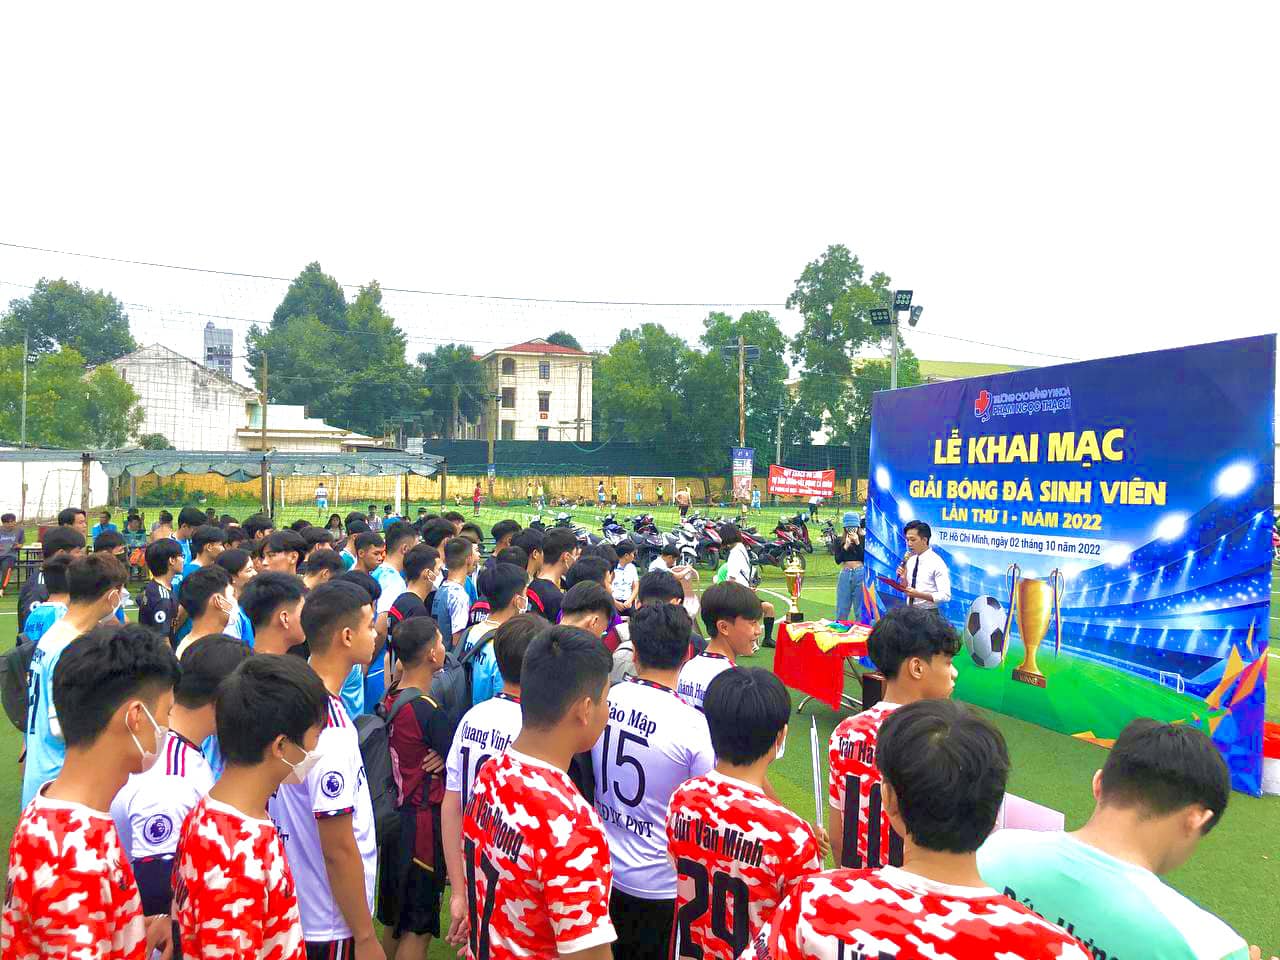 Buổi lễ Khai mạc giải bóng đá Sinh viên nam